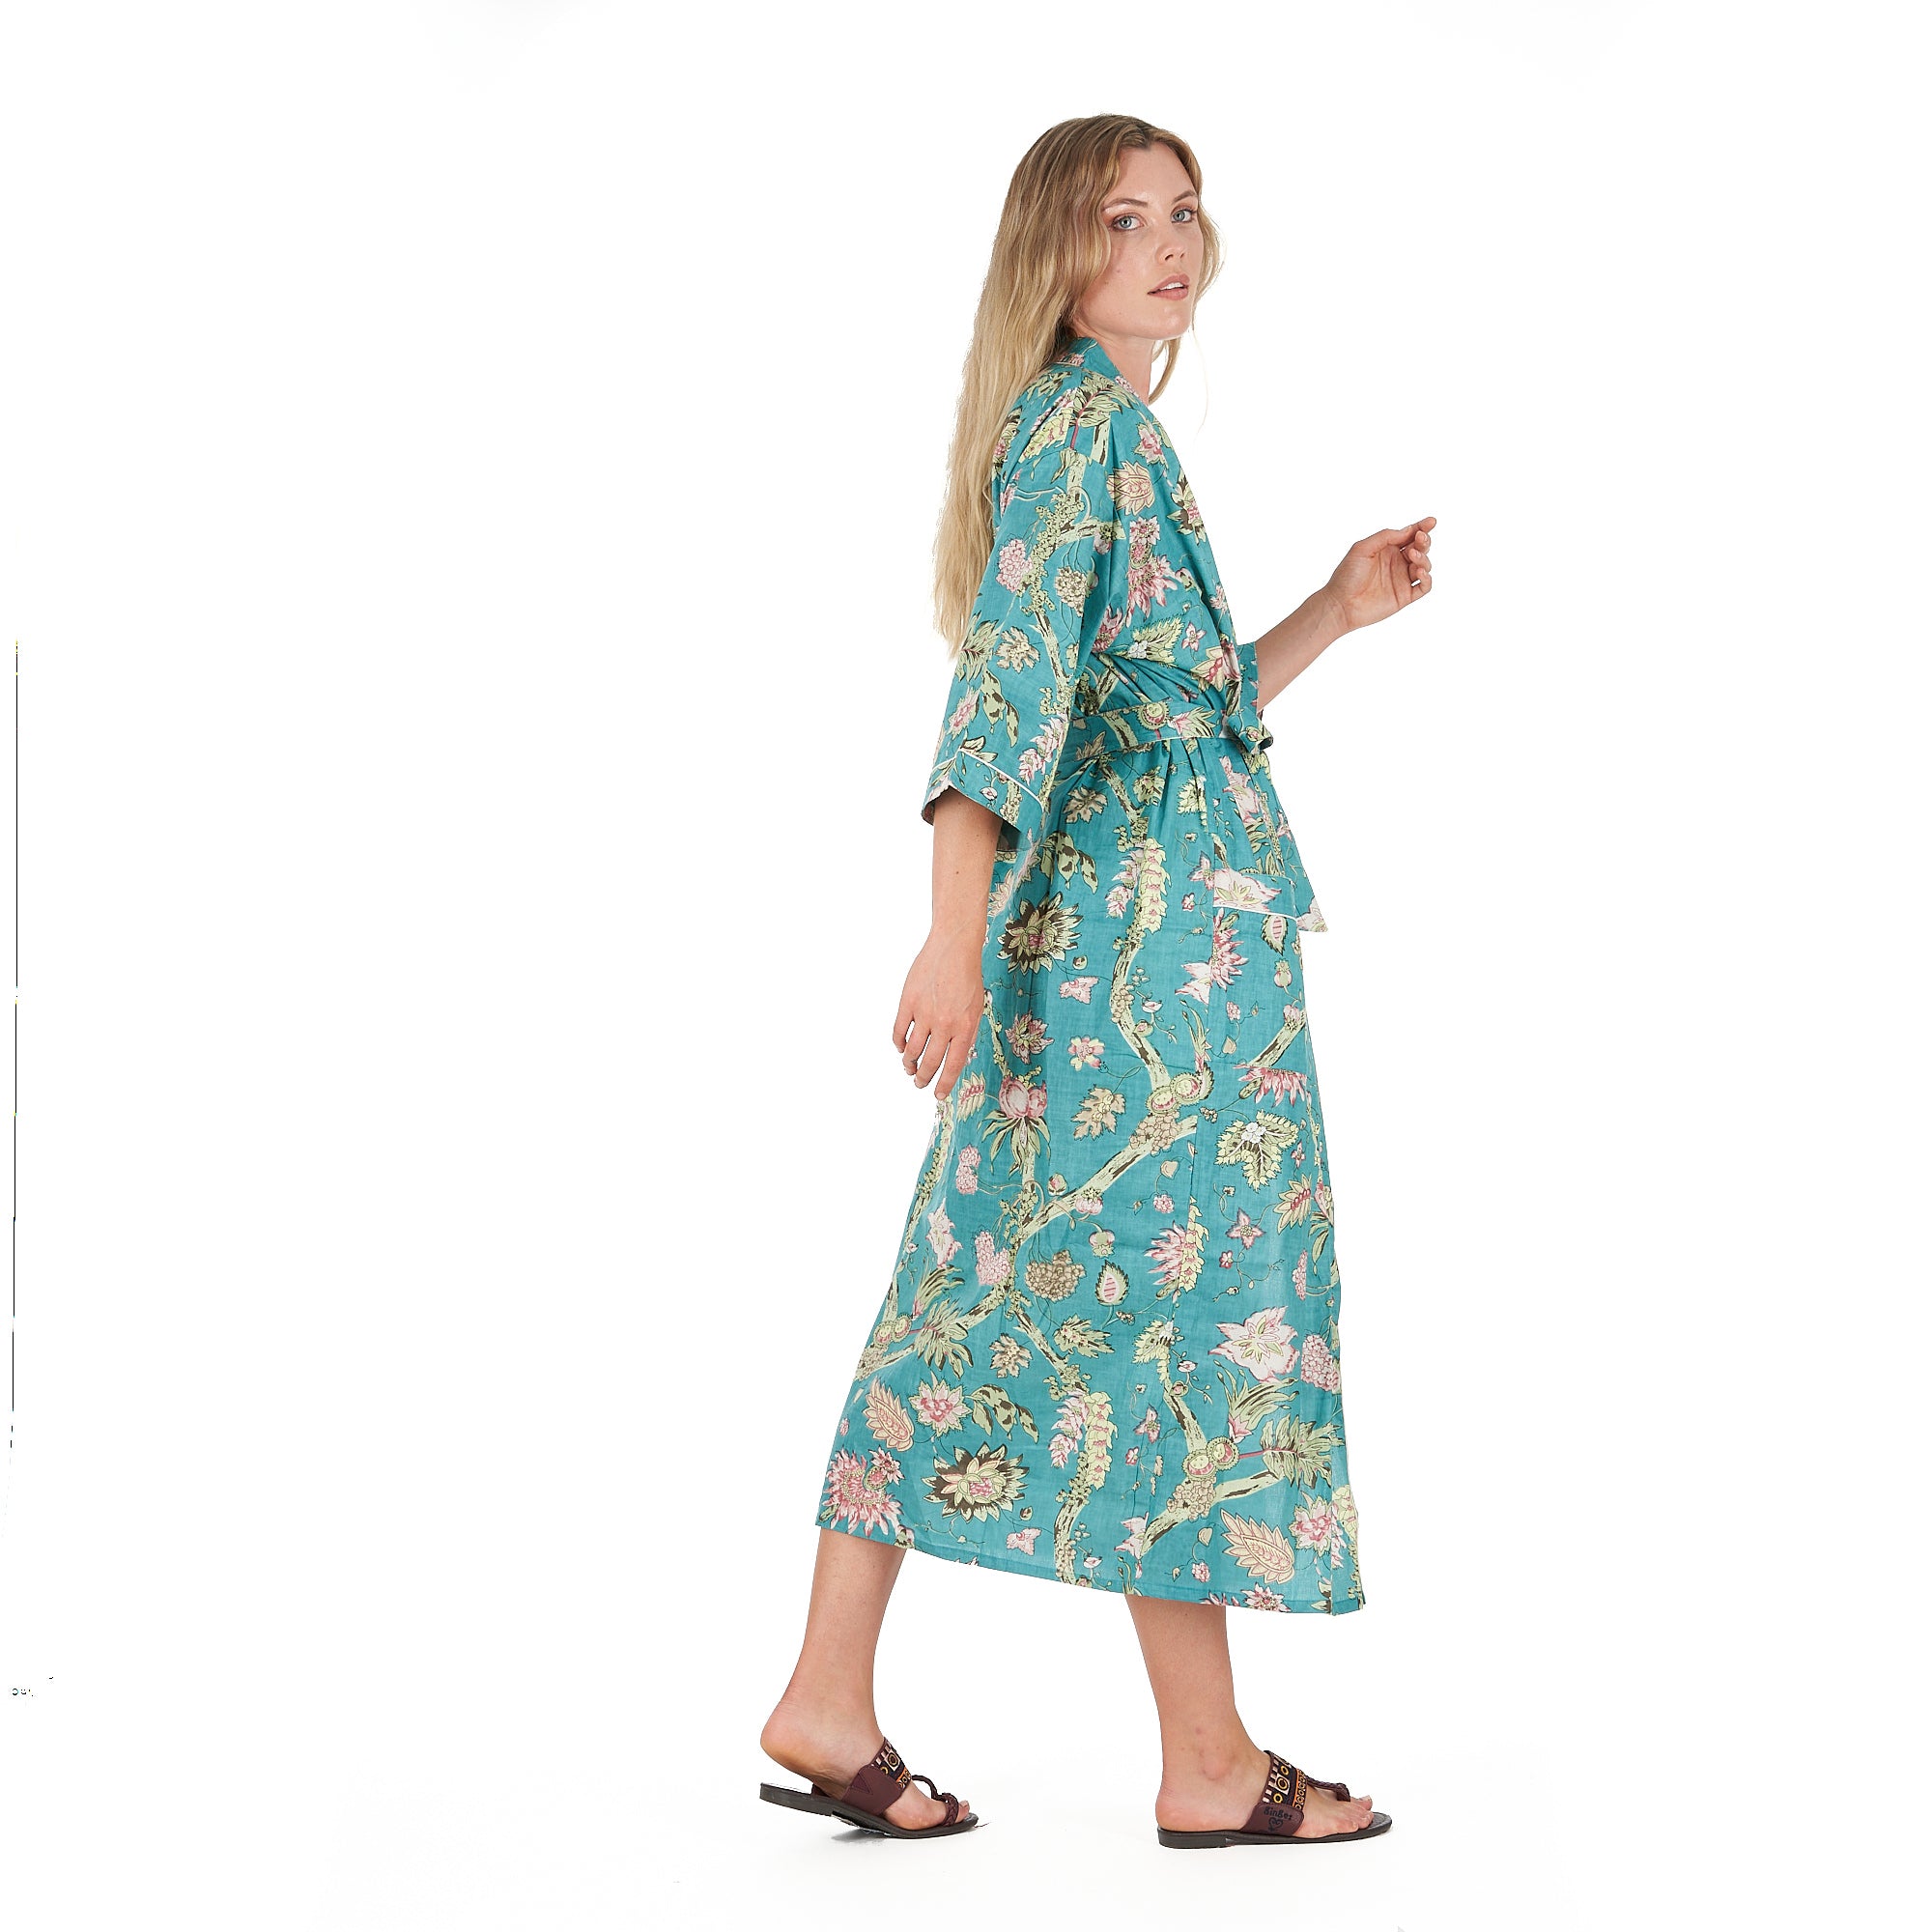 'Coastal Cool' 100% Cotton Kimono Robe